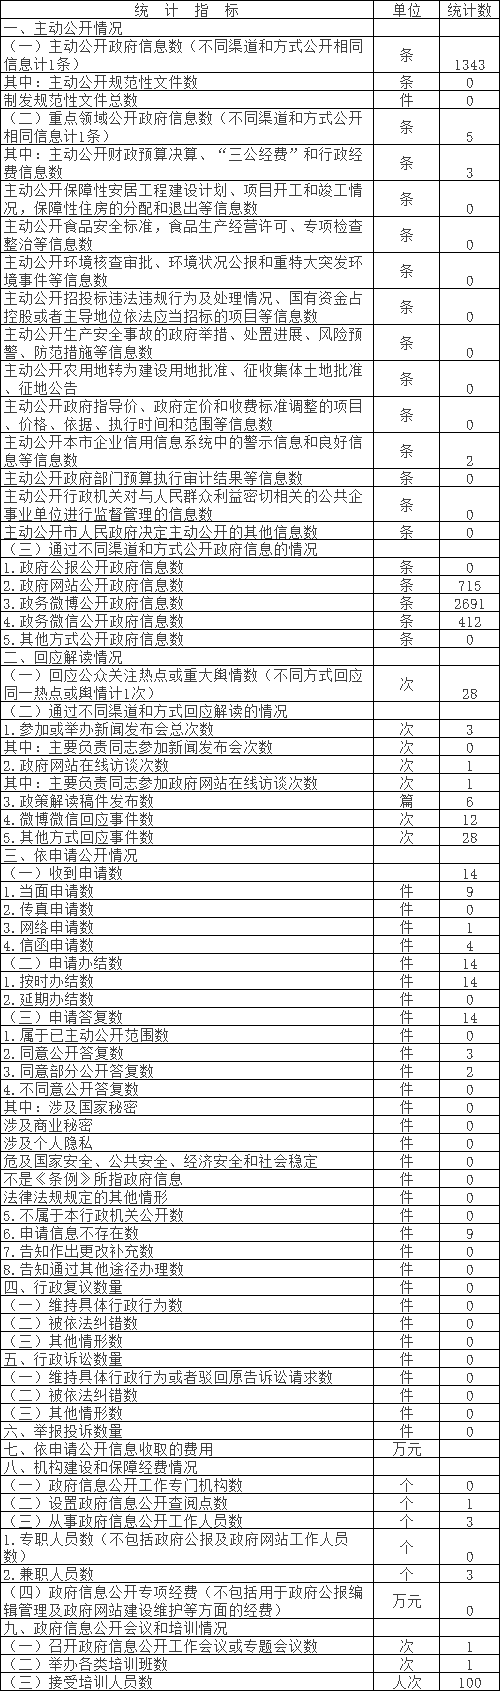 北京市文物局政府信息公开情况统计表(2017年度)